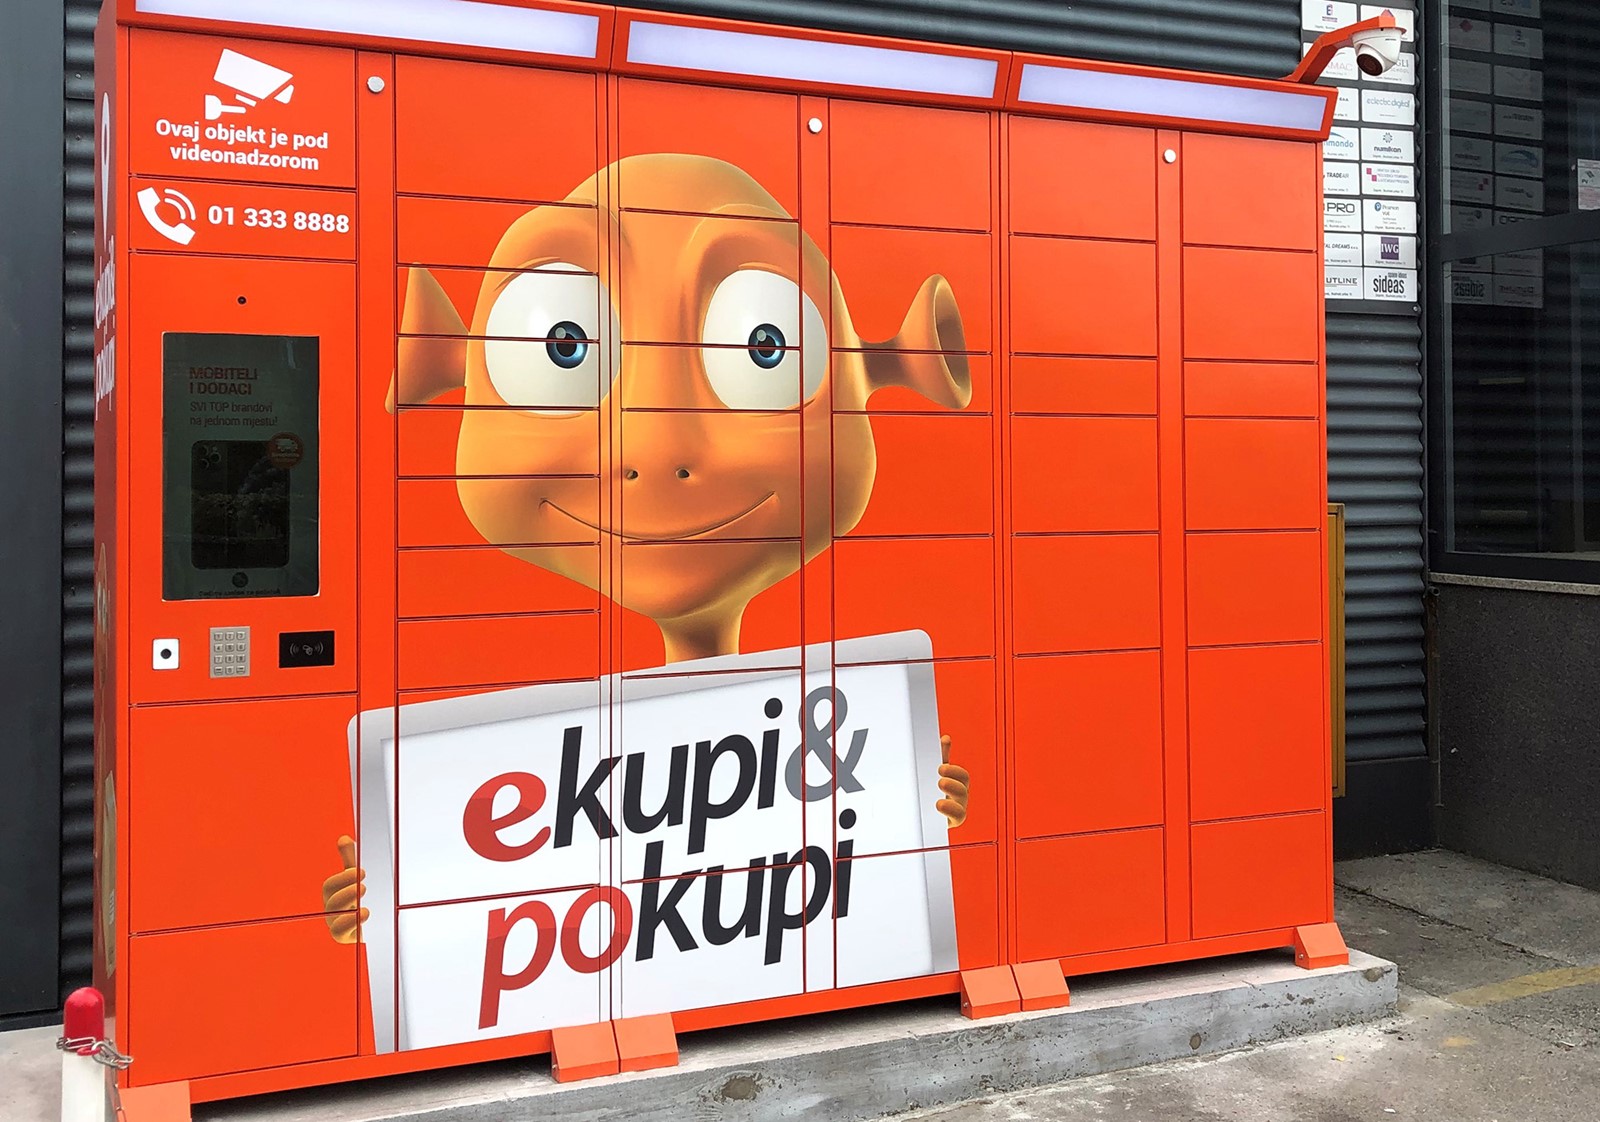 eKupi uvodi paketomate za brzu i besplatnu dostavu online narudžbi -  Trgovina @ Bug.hr